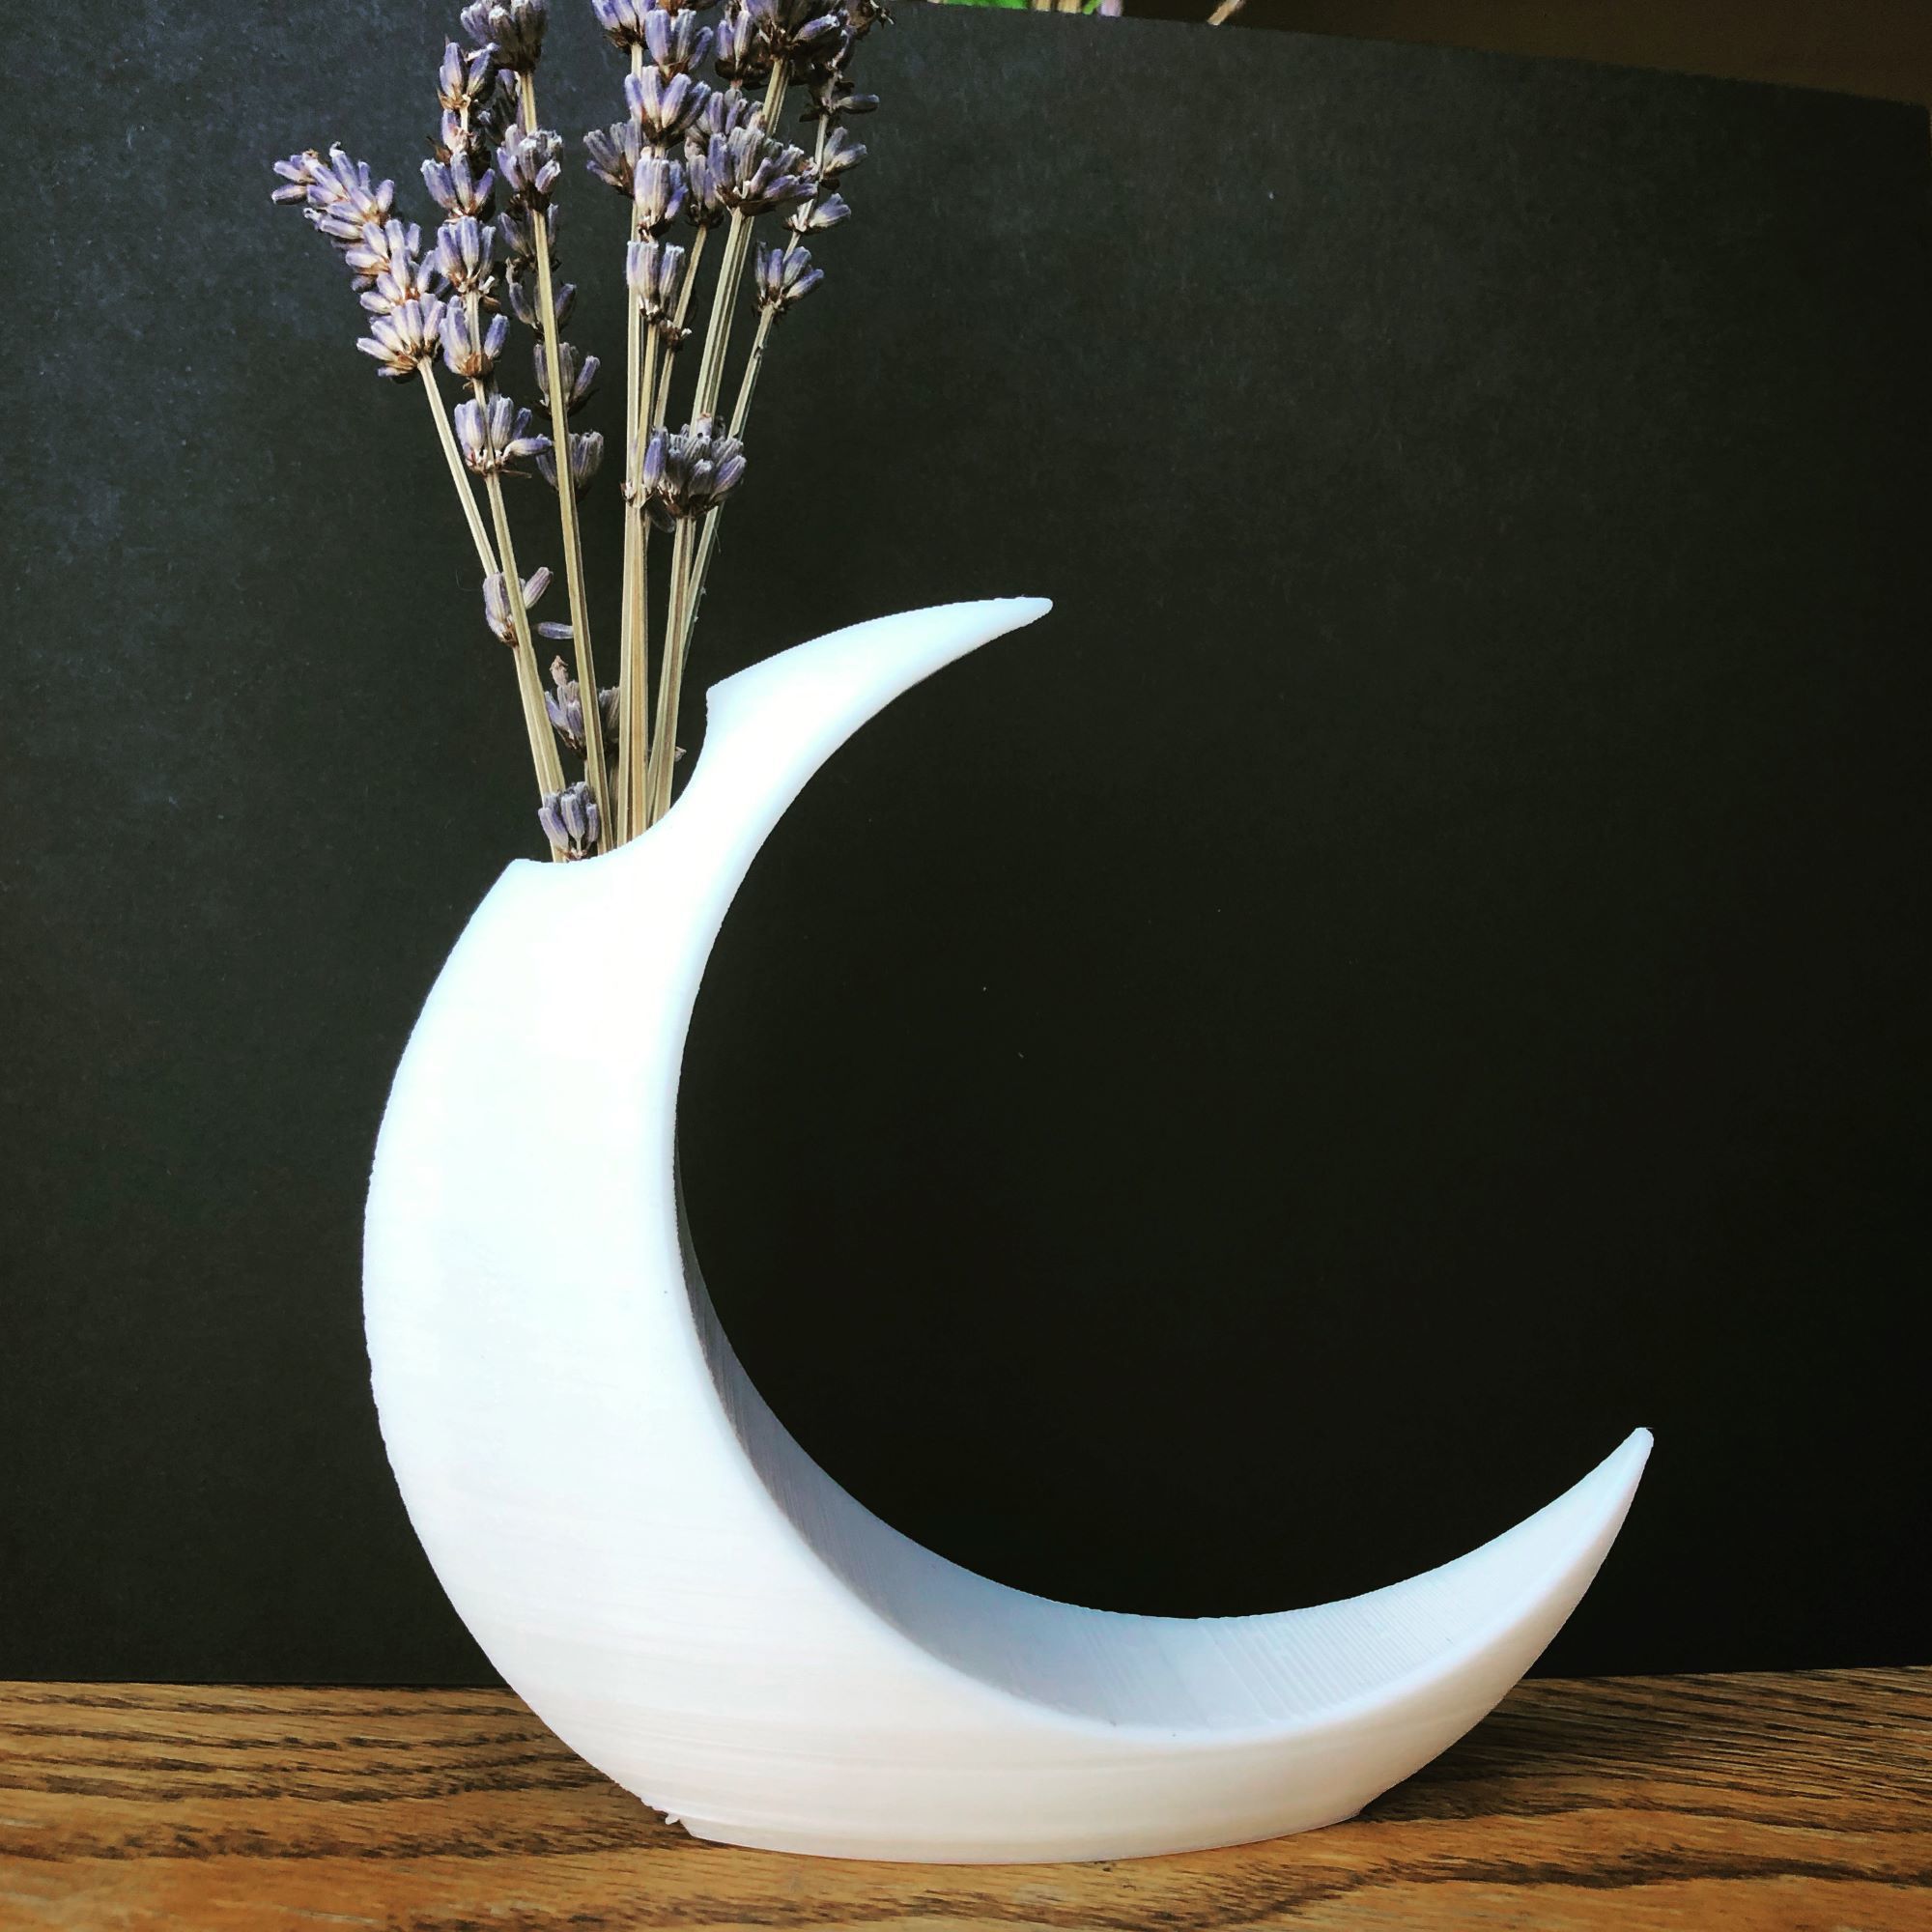 moon 1.jpg Download free STL file Minimalist Moon Vase • 3D printable design, skelei